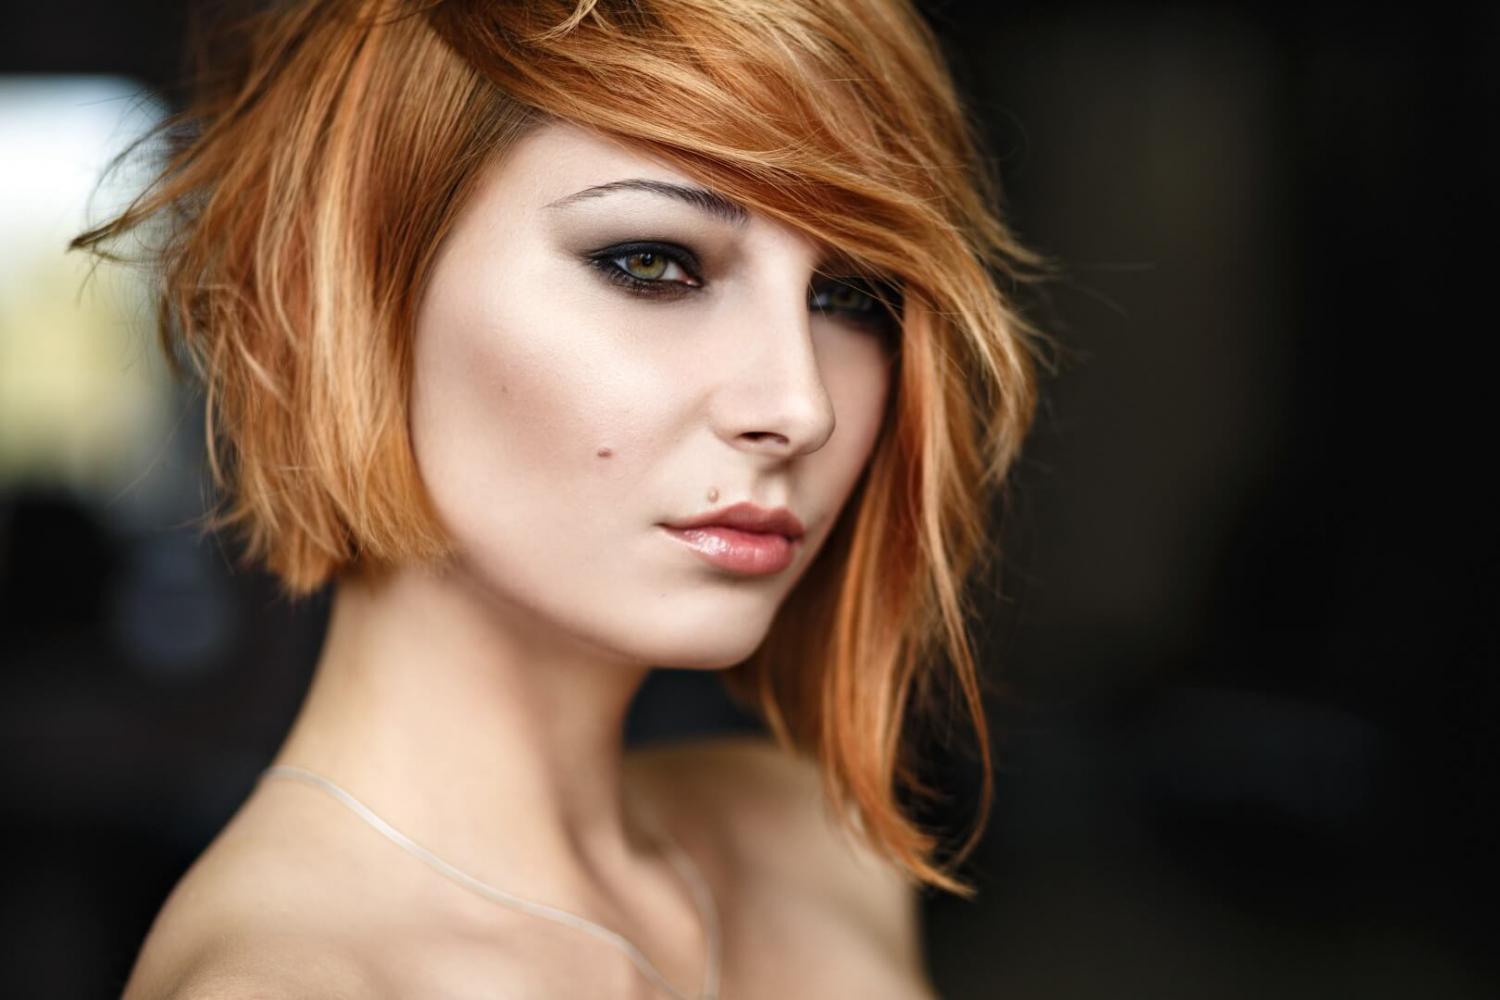 dizainvolos.ru дизайн волос - женская модельная креативная стрижка на средние волосы, ассиметричное каре, рыжий цвет волос